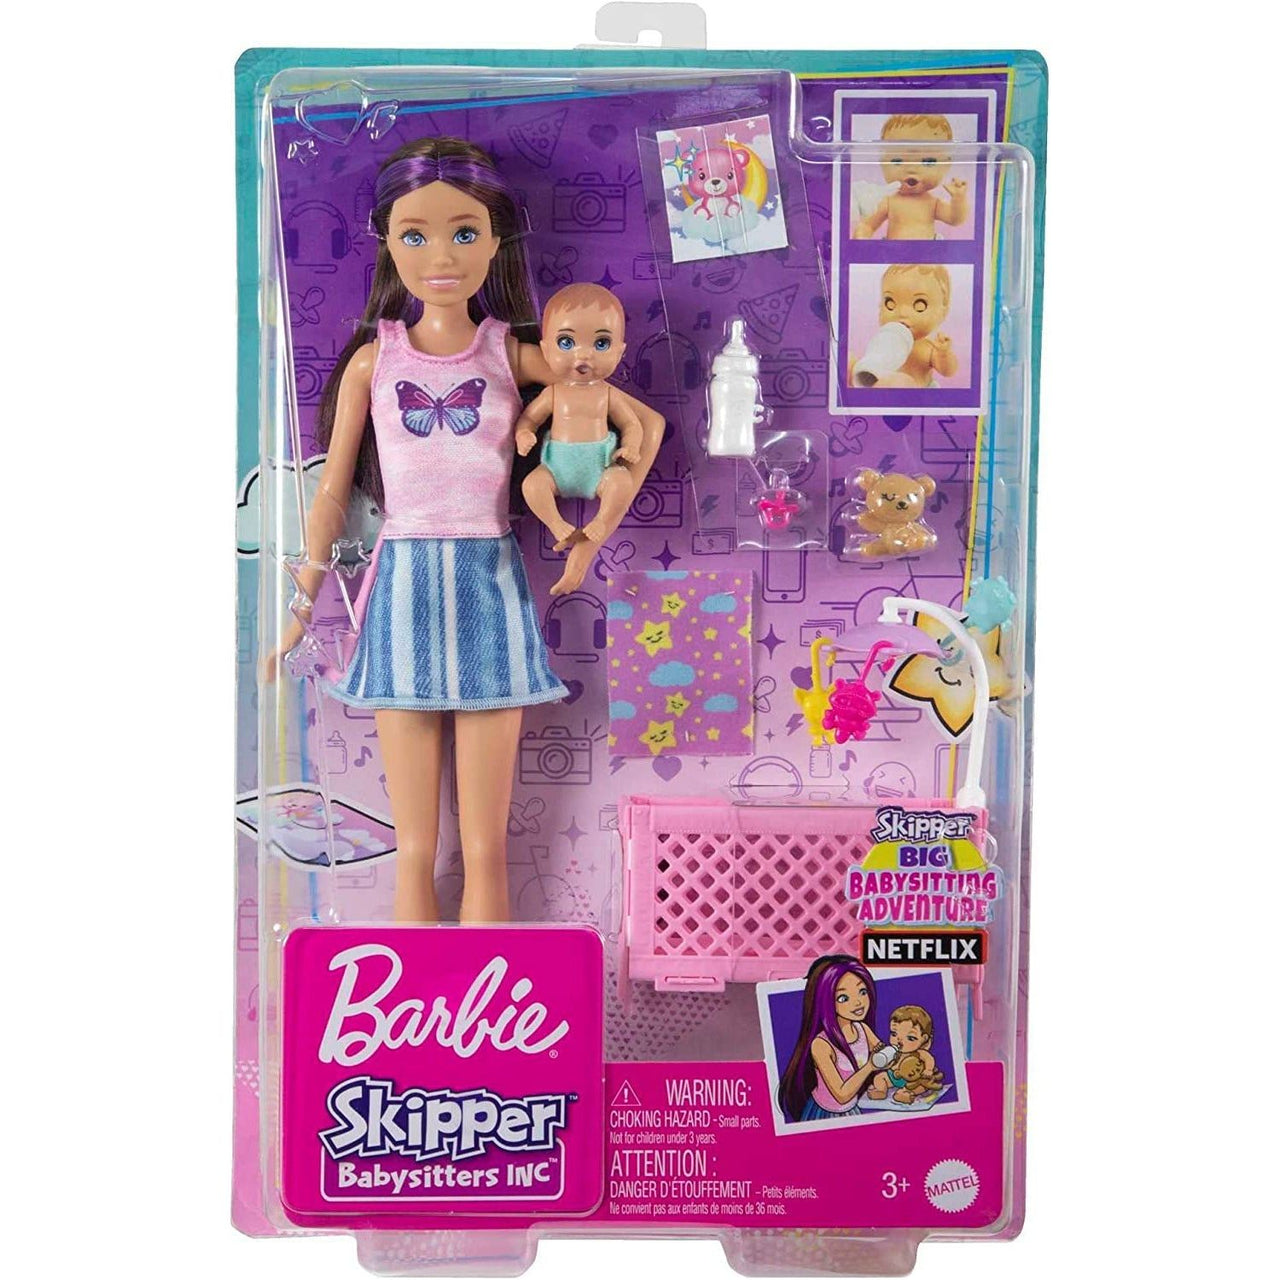 Barbie Skipper Babysitters Inc. Crib Sleepy Baby Playset - Blonde Hair Barbie